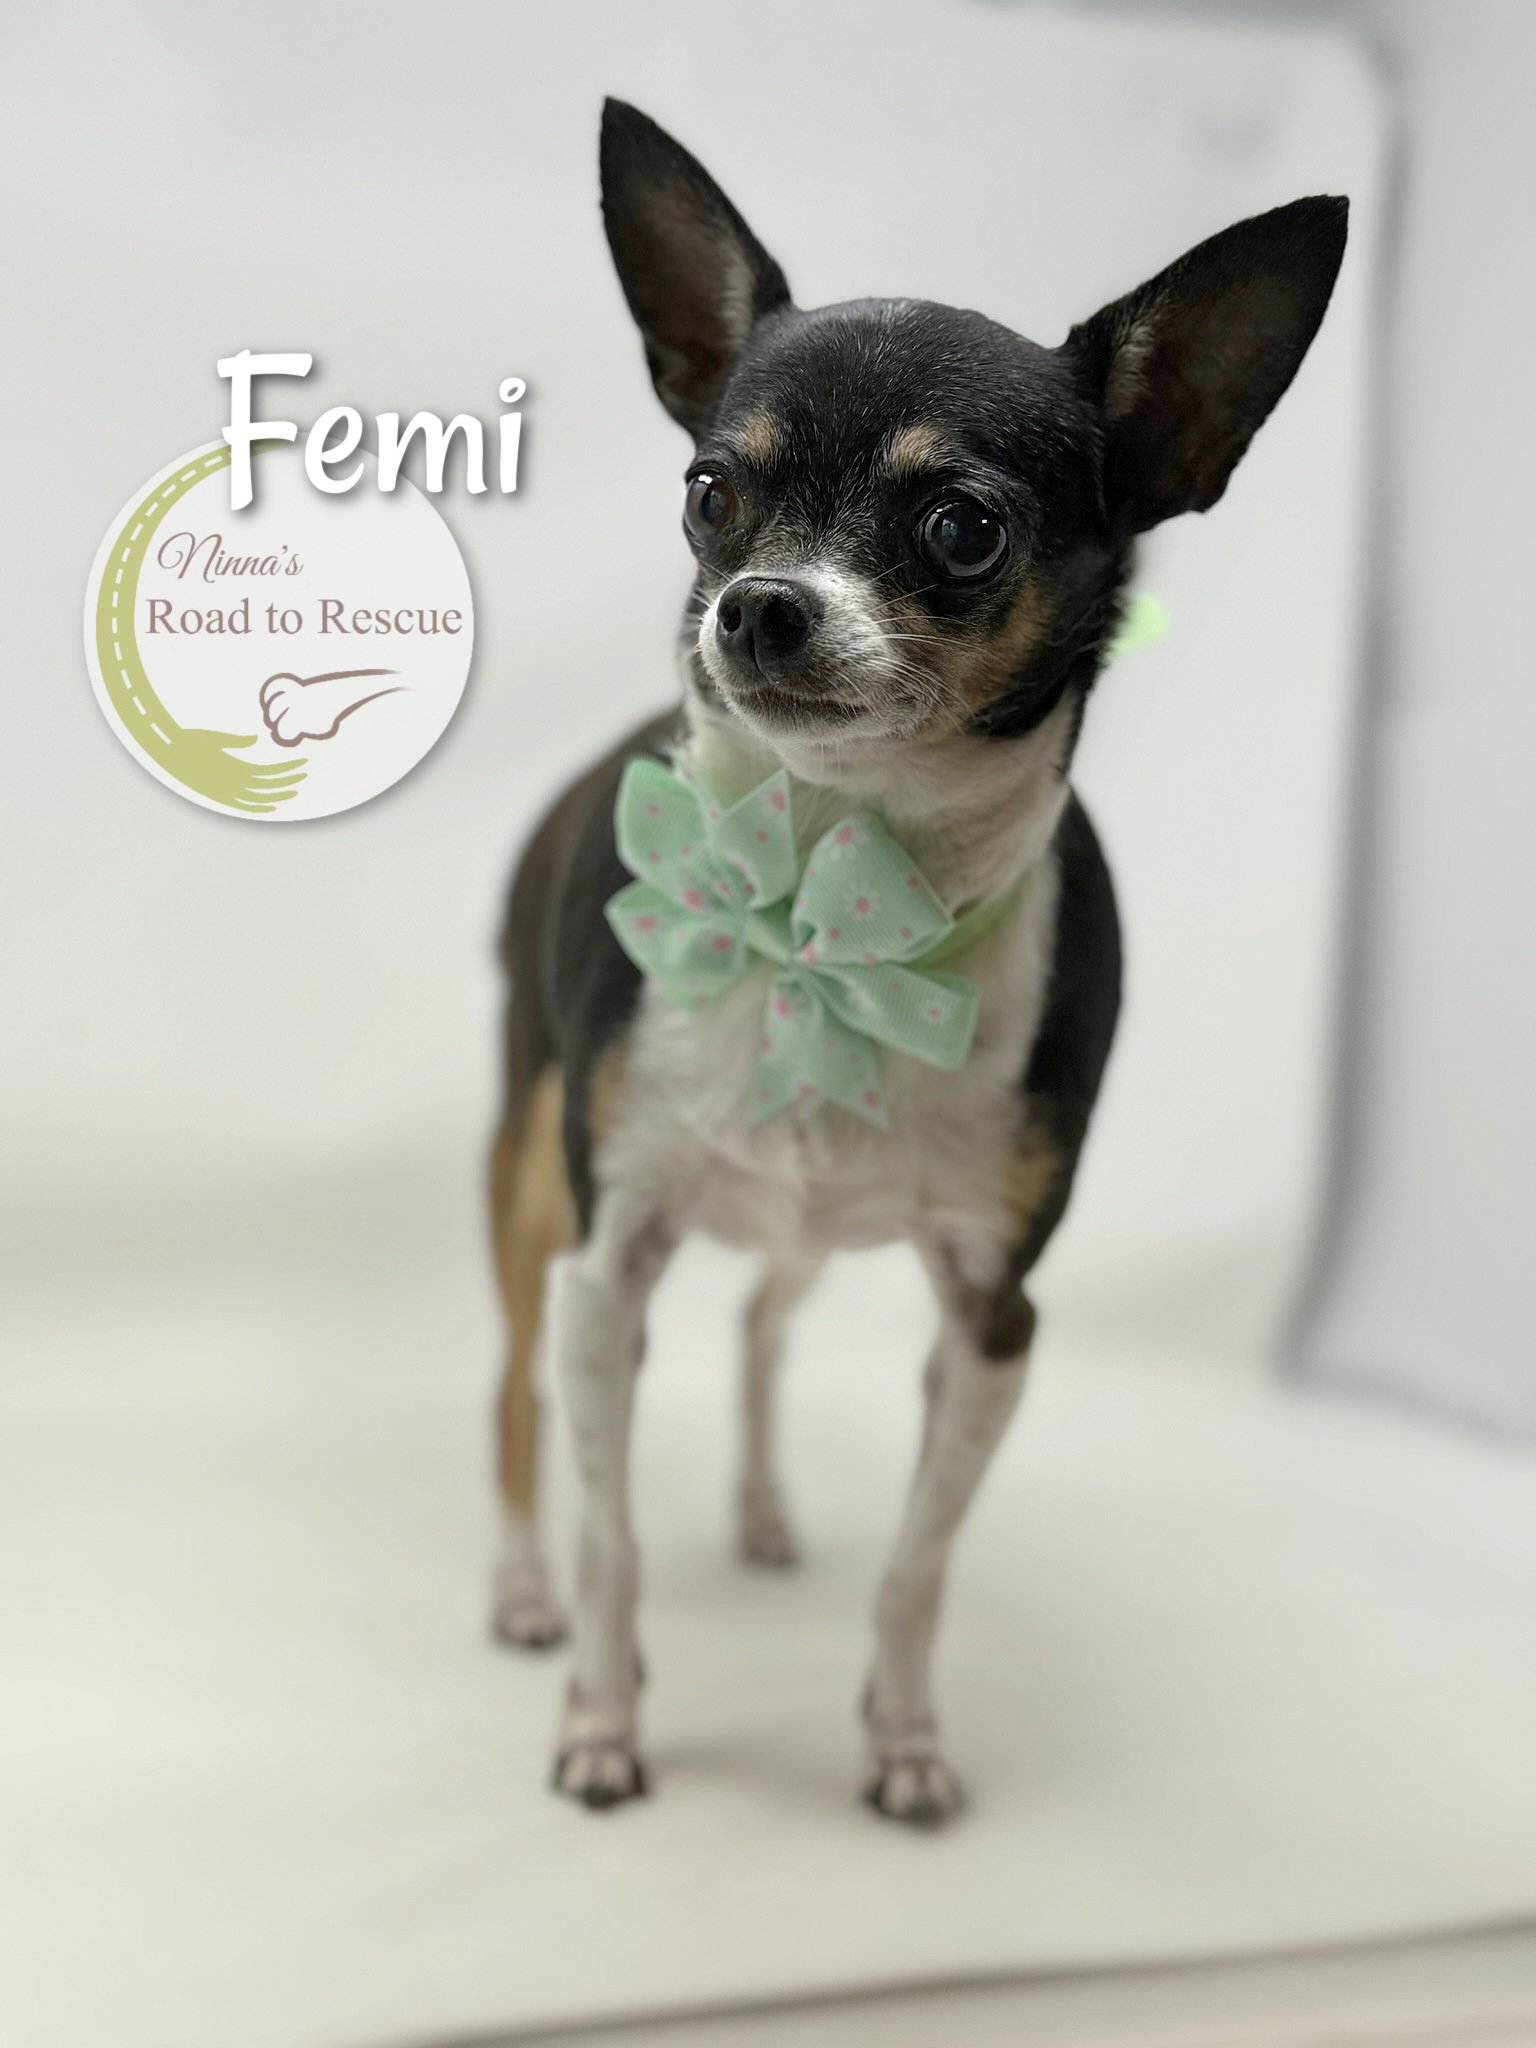 adoptable Dog in Benton, LA named Femi